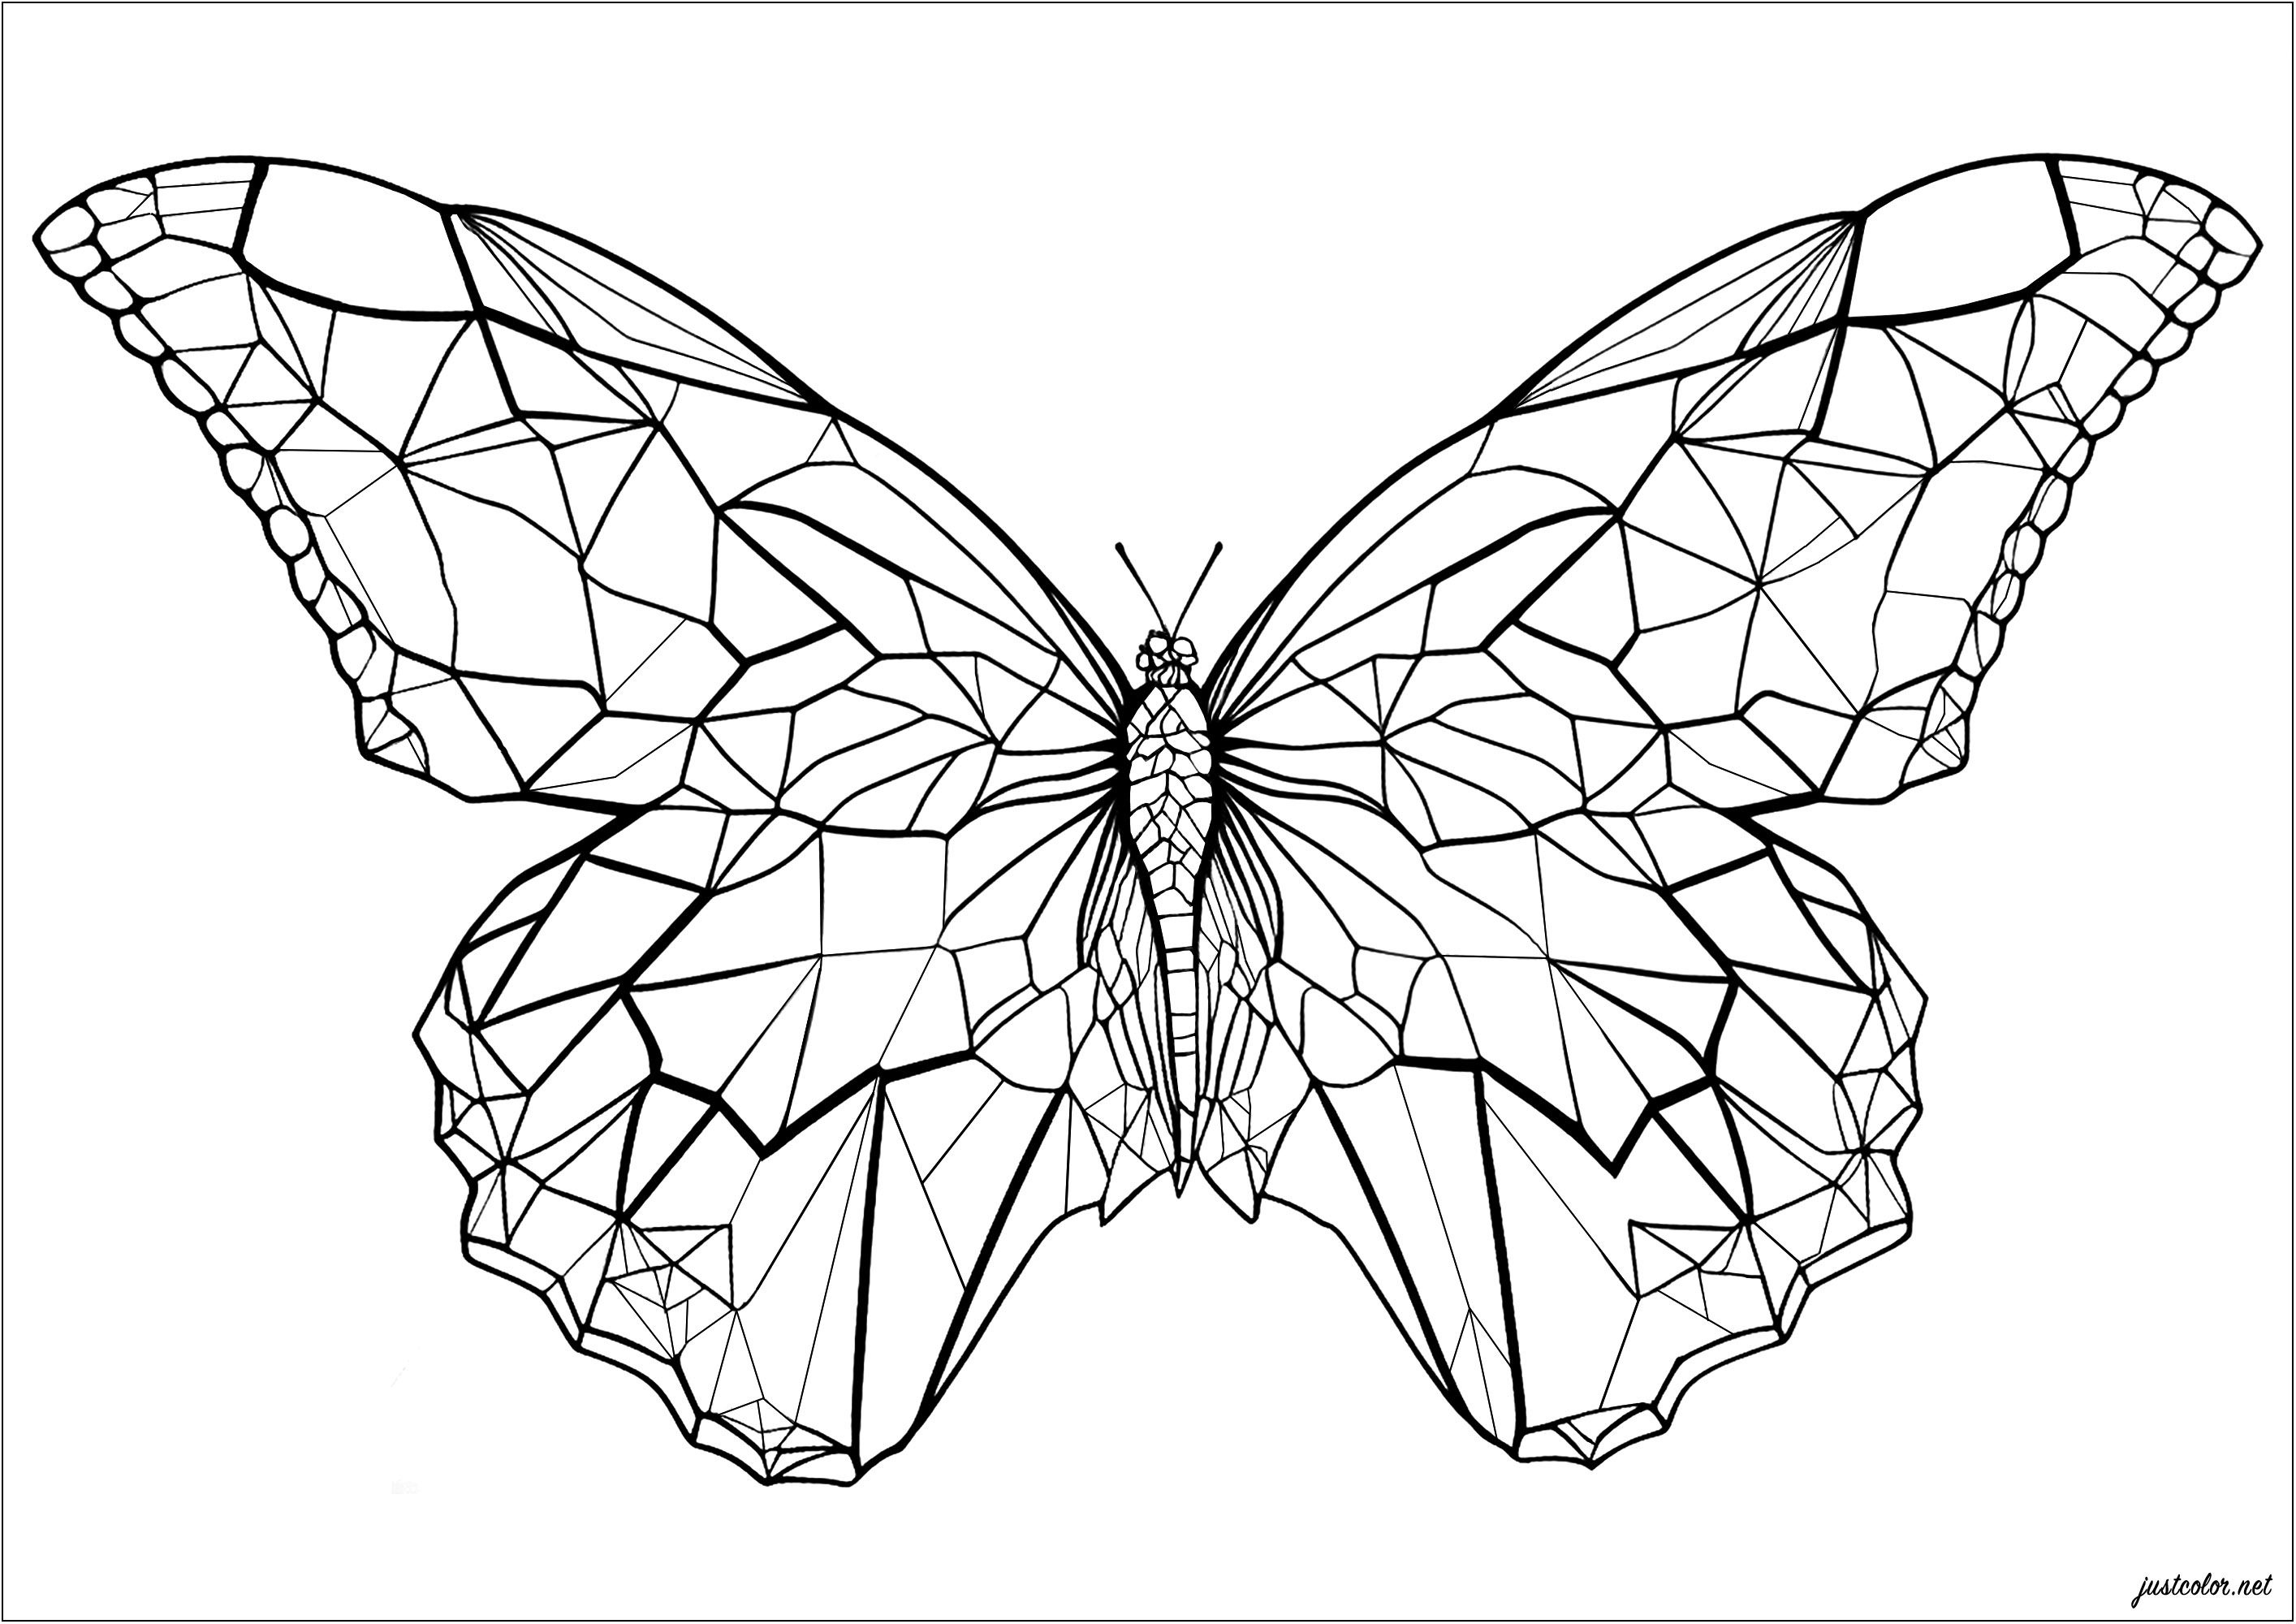 Ein Schmetterling mit eckigen und geometrischen Flügeln. Färbe jede geometrische Form der Flügel dieses schönen Schmetterlings! Farbverläufe, Farben des Regenbogens ... Symmetrie oder nicht ... es liegt an Ihnen, Ihren Stil zu wählen, die Möglichkeiten sind endlos und das Ergebnis ist sicher, schön zu sein.